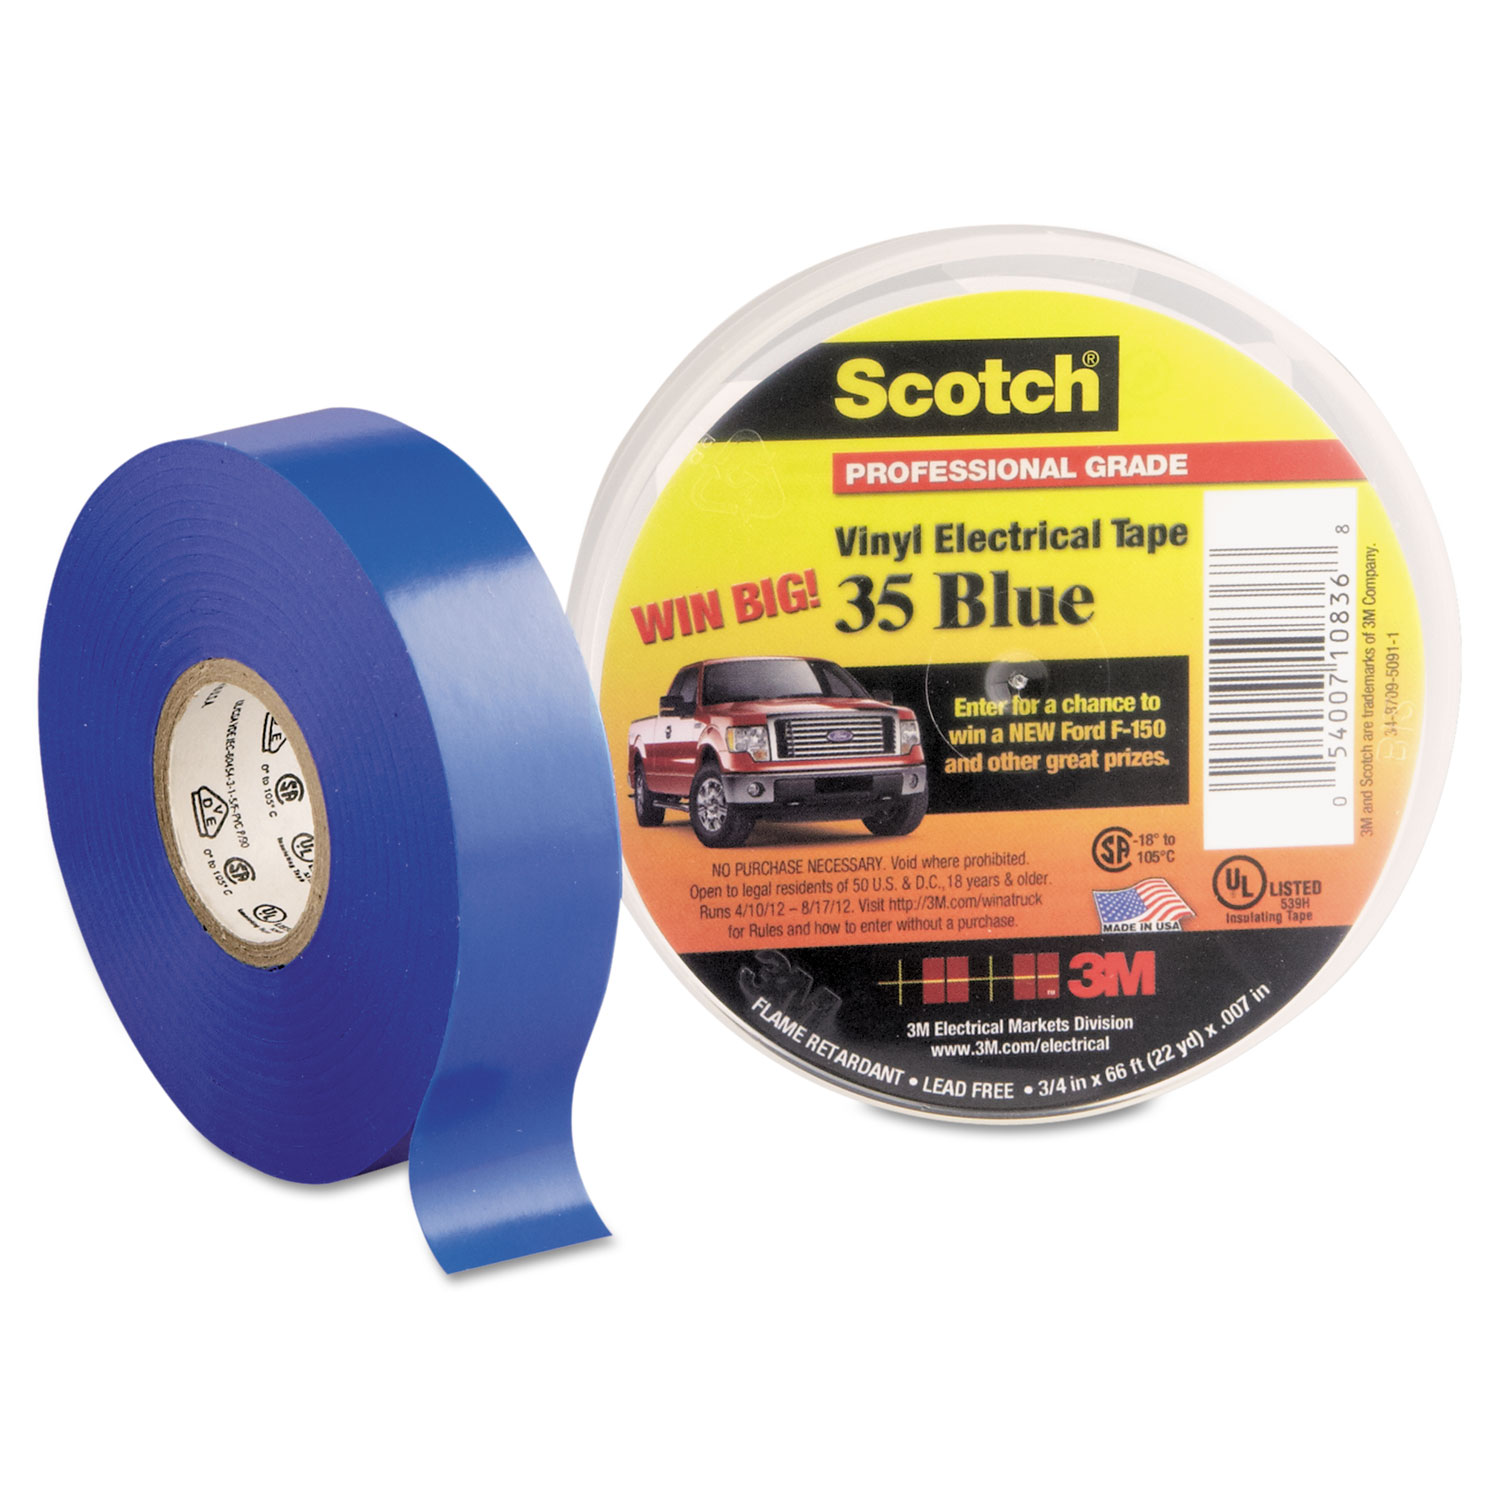  3M 10836-DL-10 Scotch 35 Vinyl Electrical Color Coding Tape, 3 Core, 0.75 x 66 ft, Blue (MMM10836) 